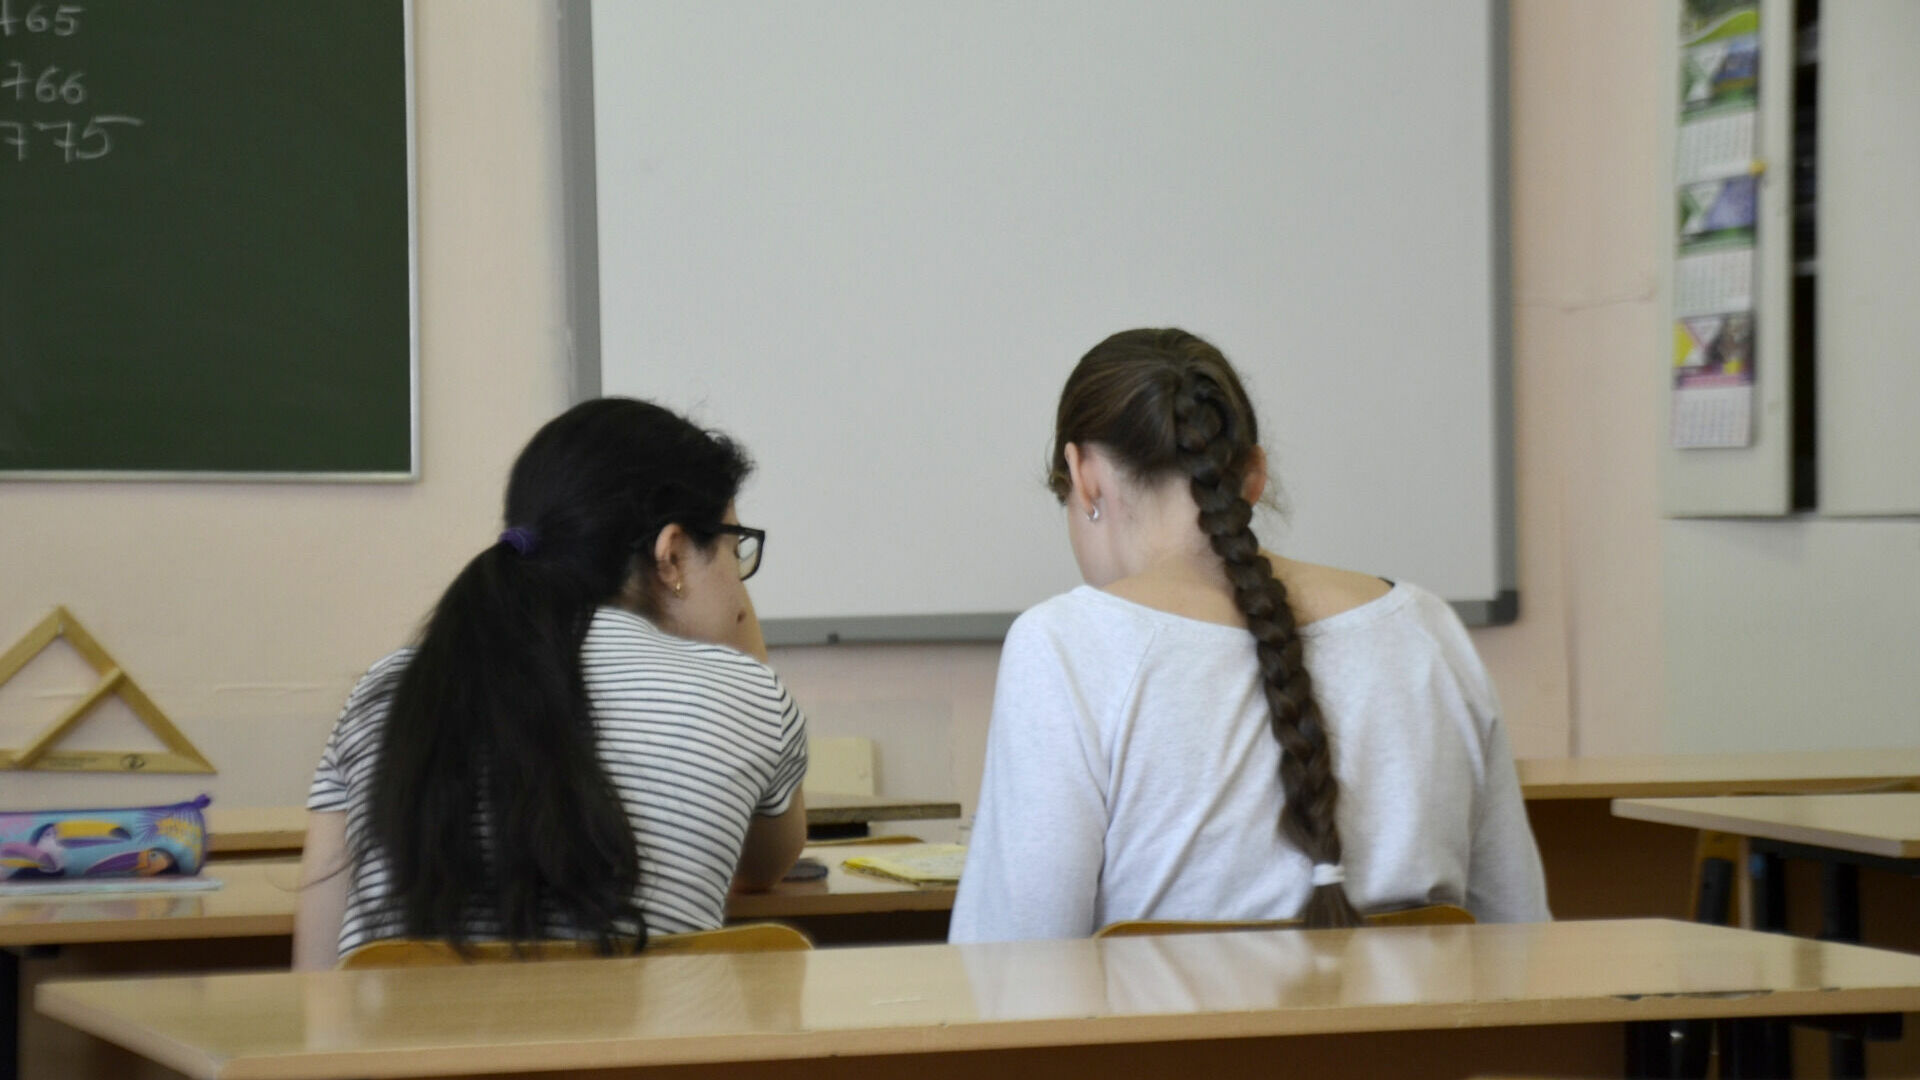 Сургутских школьников могут отправить на каникулы раньше срока из-за ОРВИ